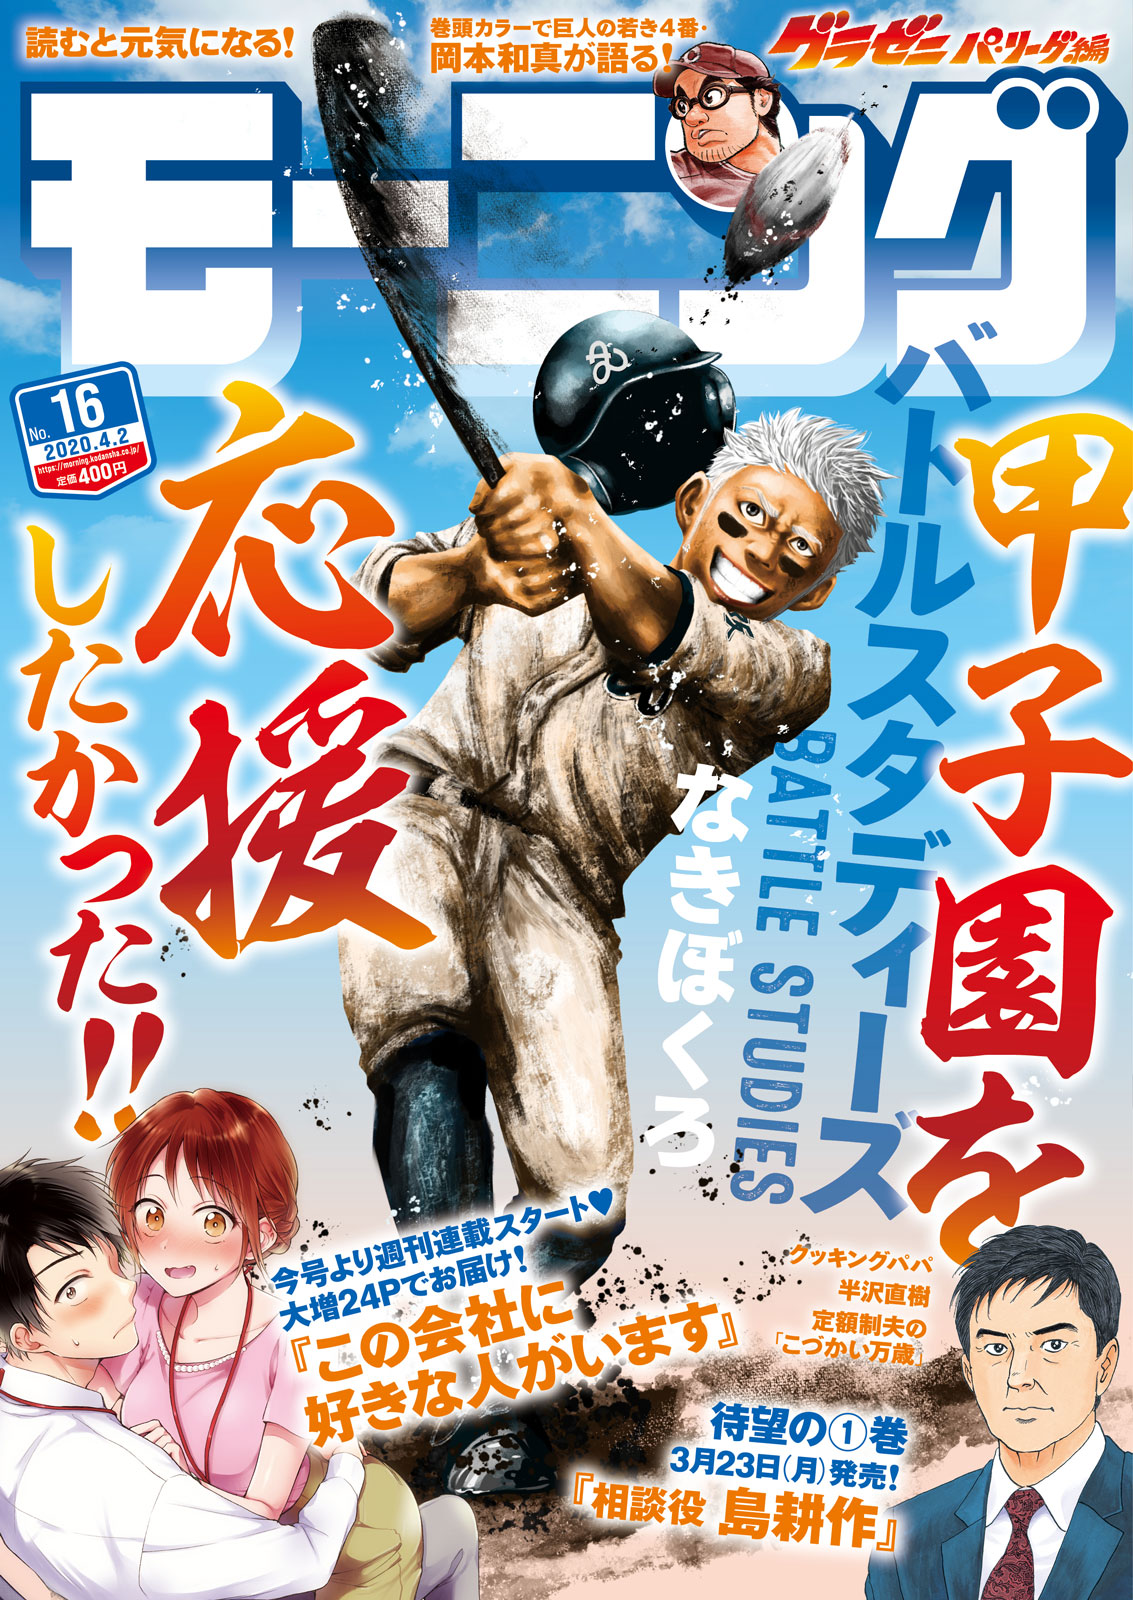 【SÁNG RA XEM BÁO】Bộ sưu tập ảnh bìa tạp chí manga 2020 - Tháng 3 - Shounen/Seinen (Phần 3)